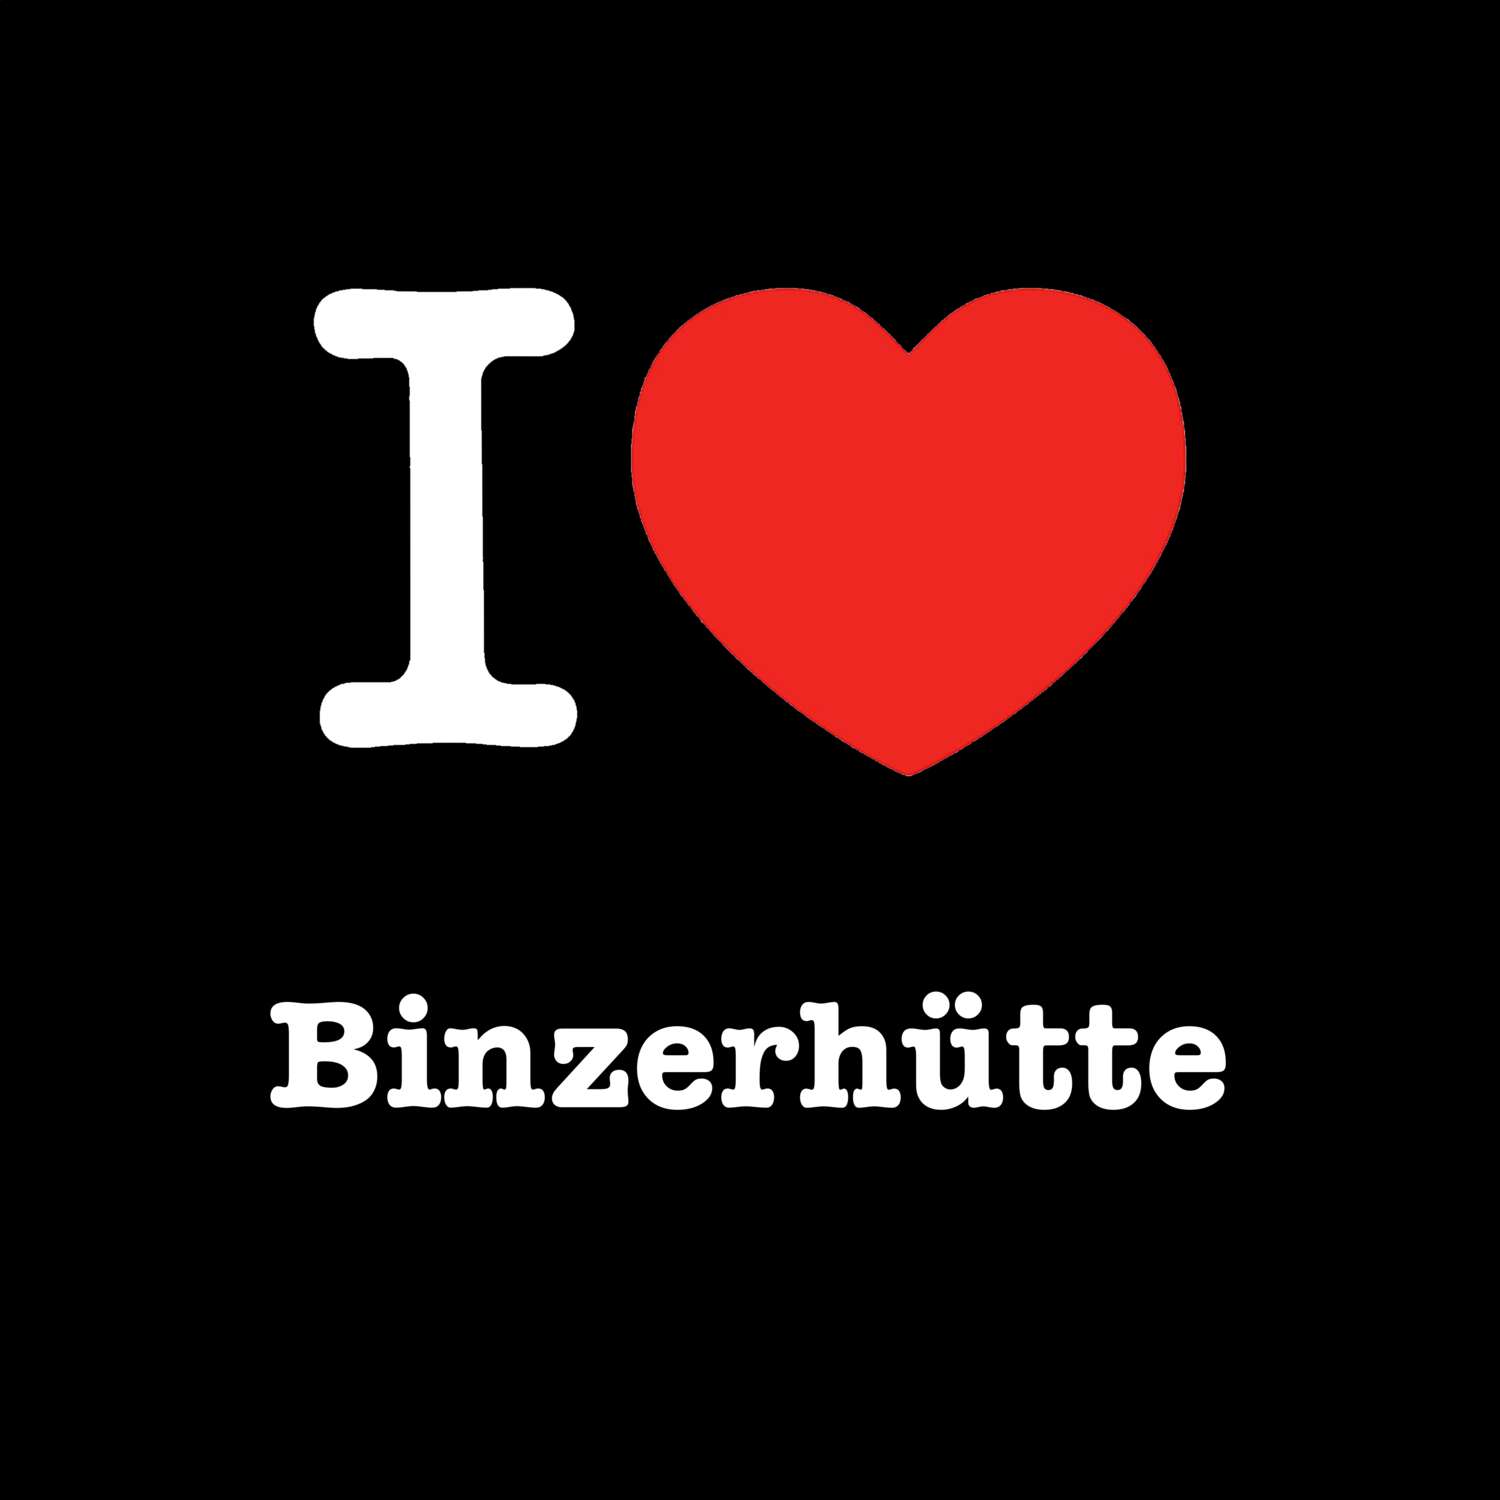 Binzerhütte T-Shirt »I love«